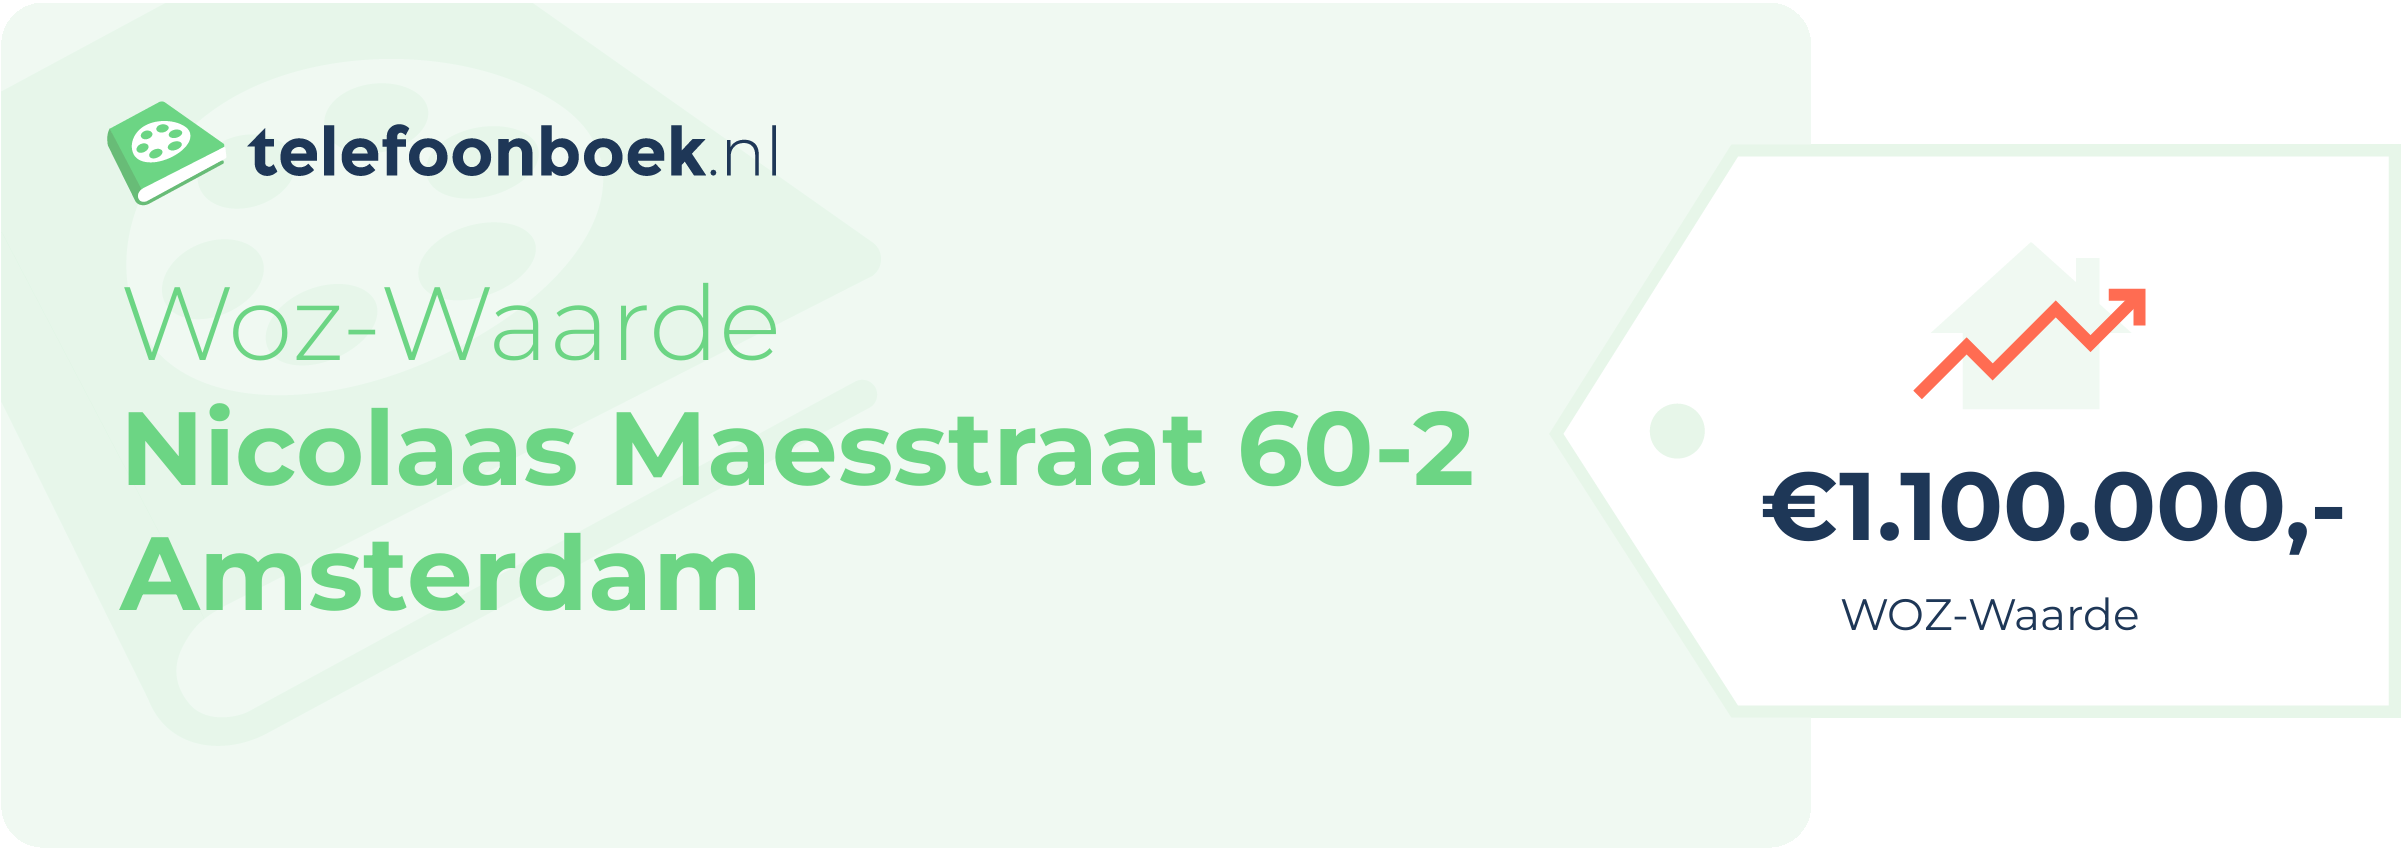 WOZ-waarde Nicolaas Maesstraat 60-2 Amsterdam